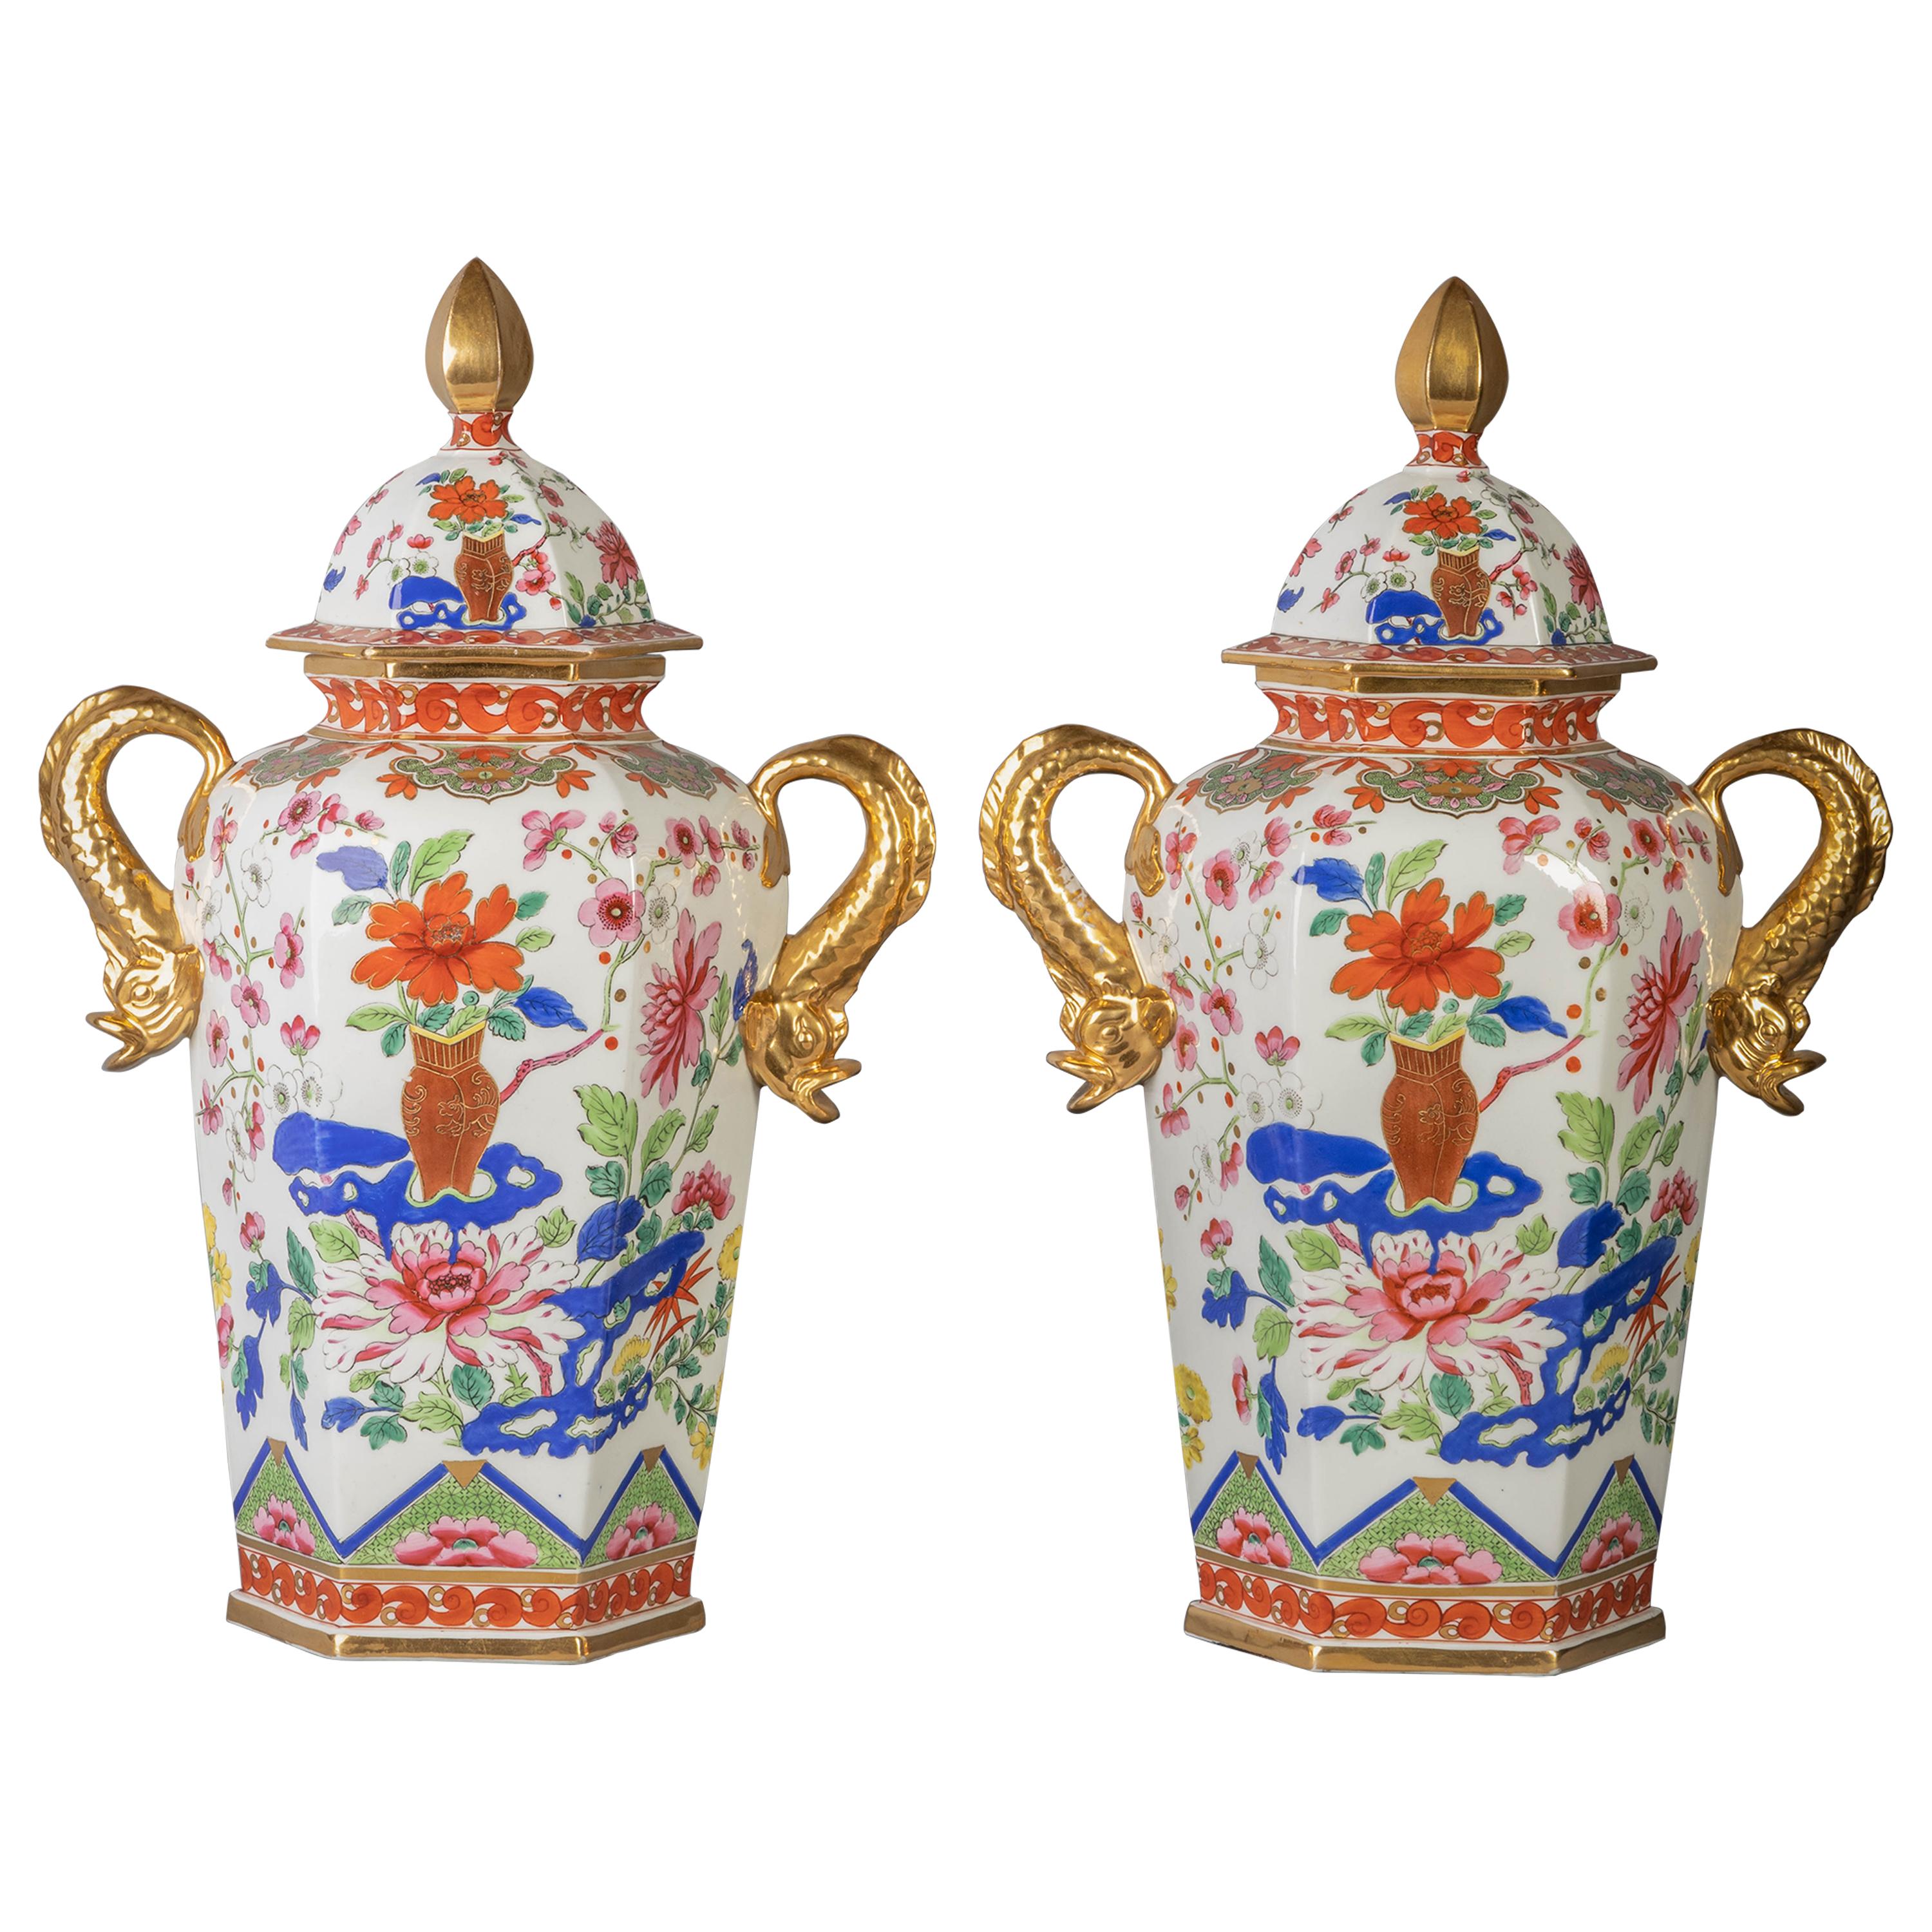 Pair of English Ironstone Imari Hexagonal Covered Vases, circa 1815